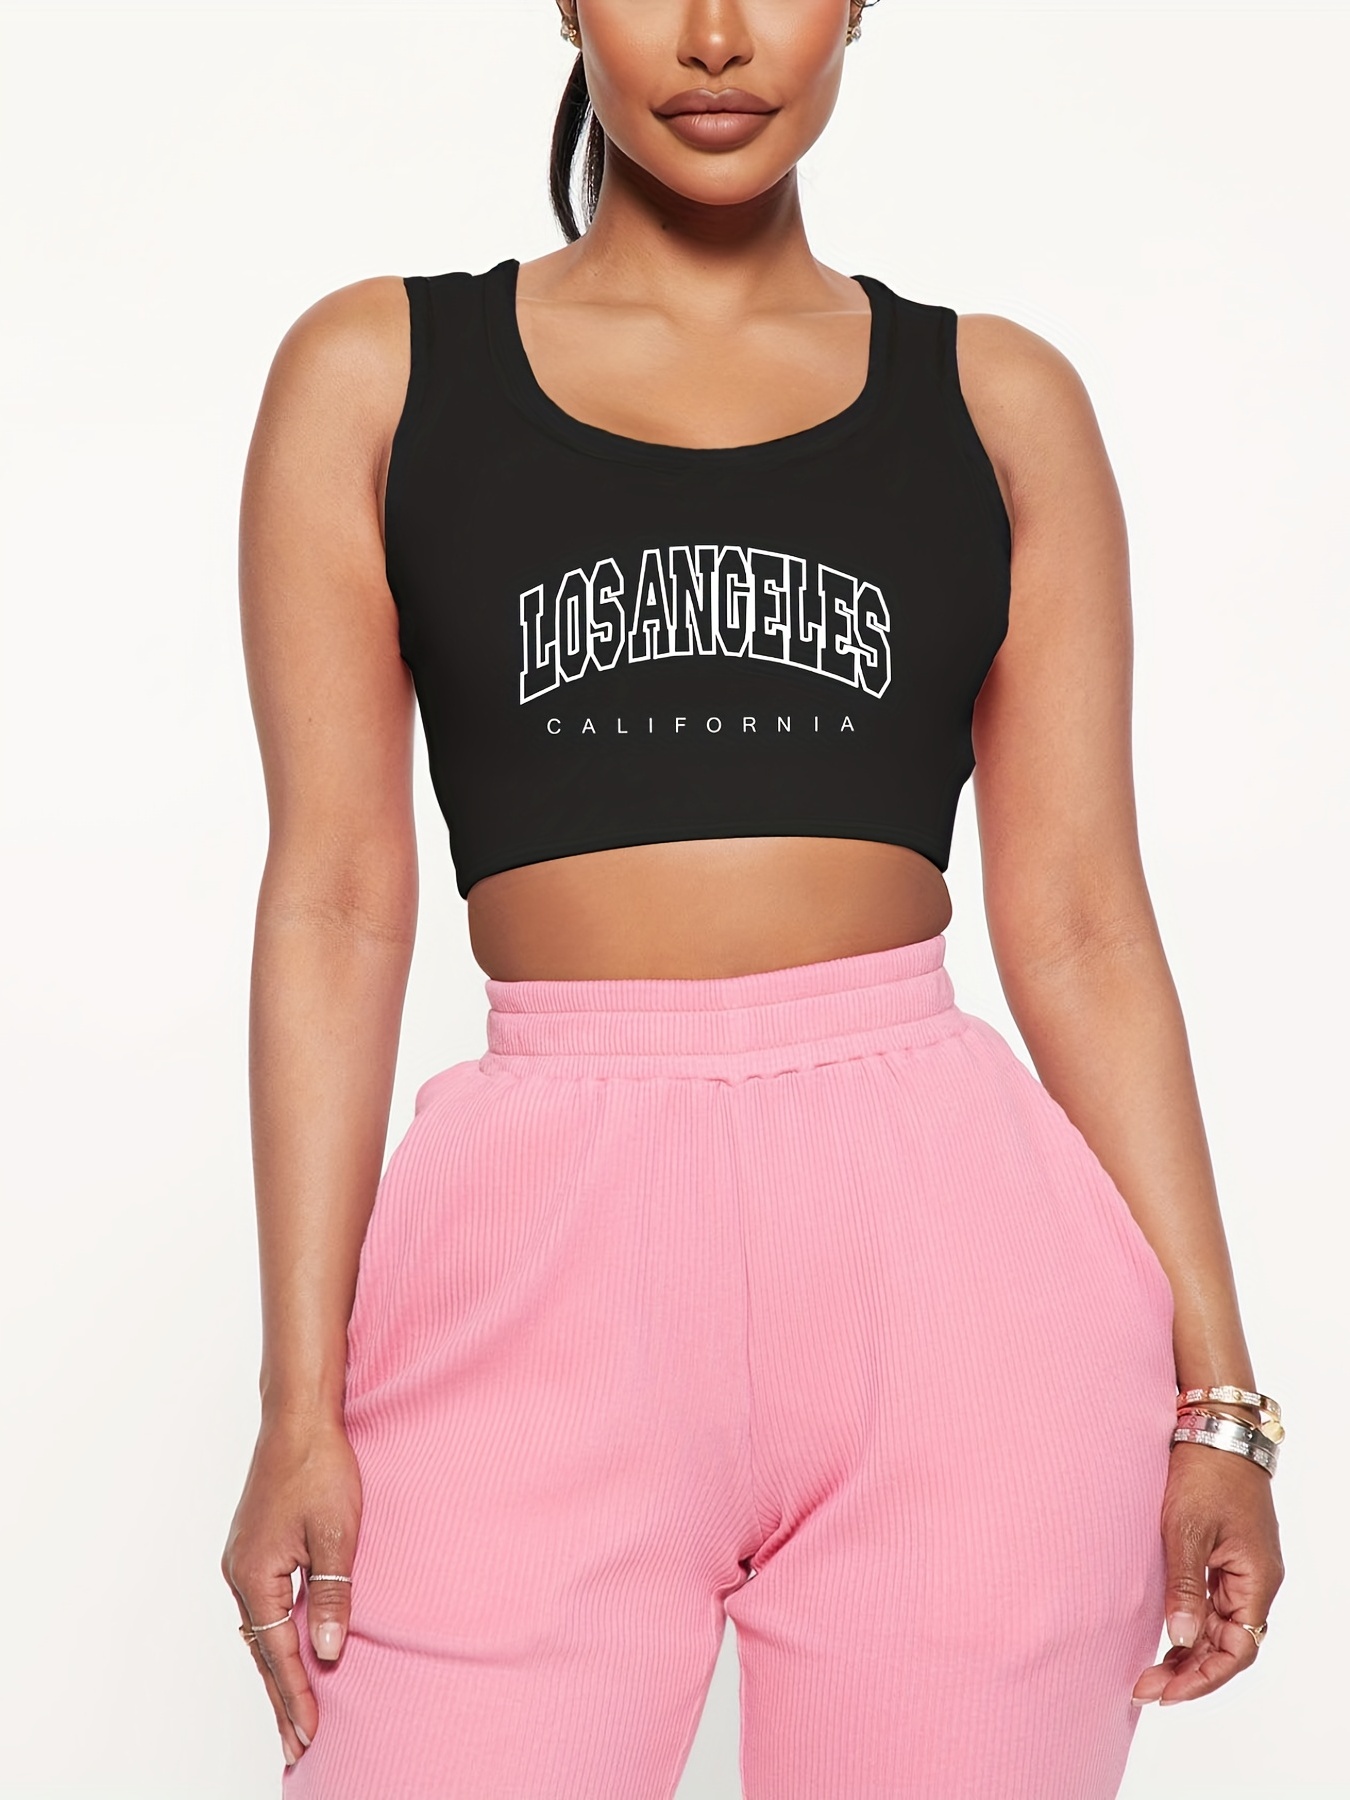 FOREVER 21 Womens Size Medium Pink Sleeveless Crop Top Tank Top Shirt  Sports Bra 